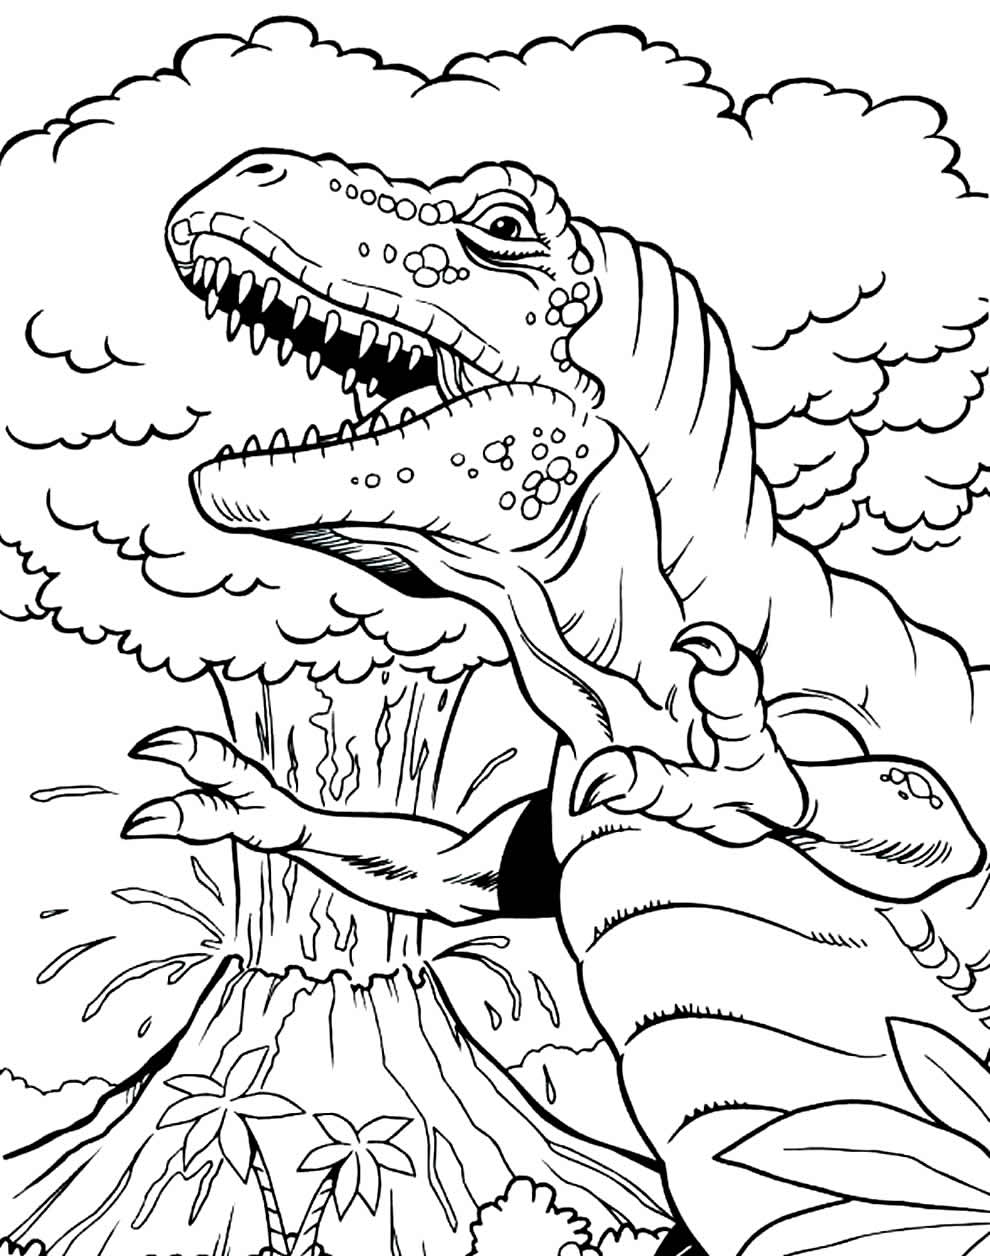 Desenho para pintar de Dinossauro